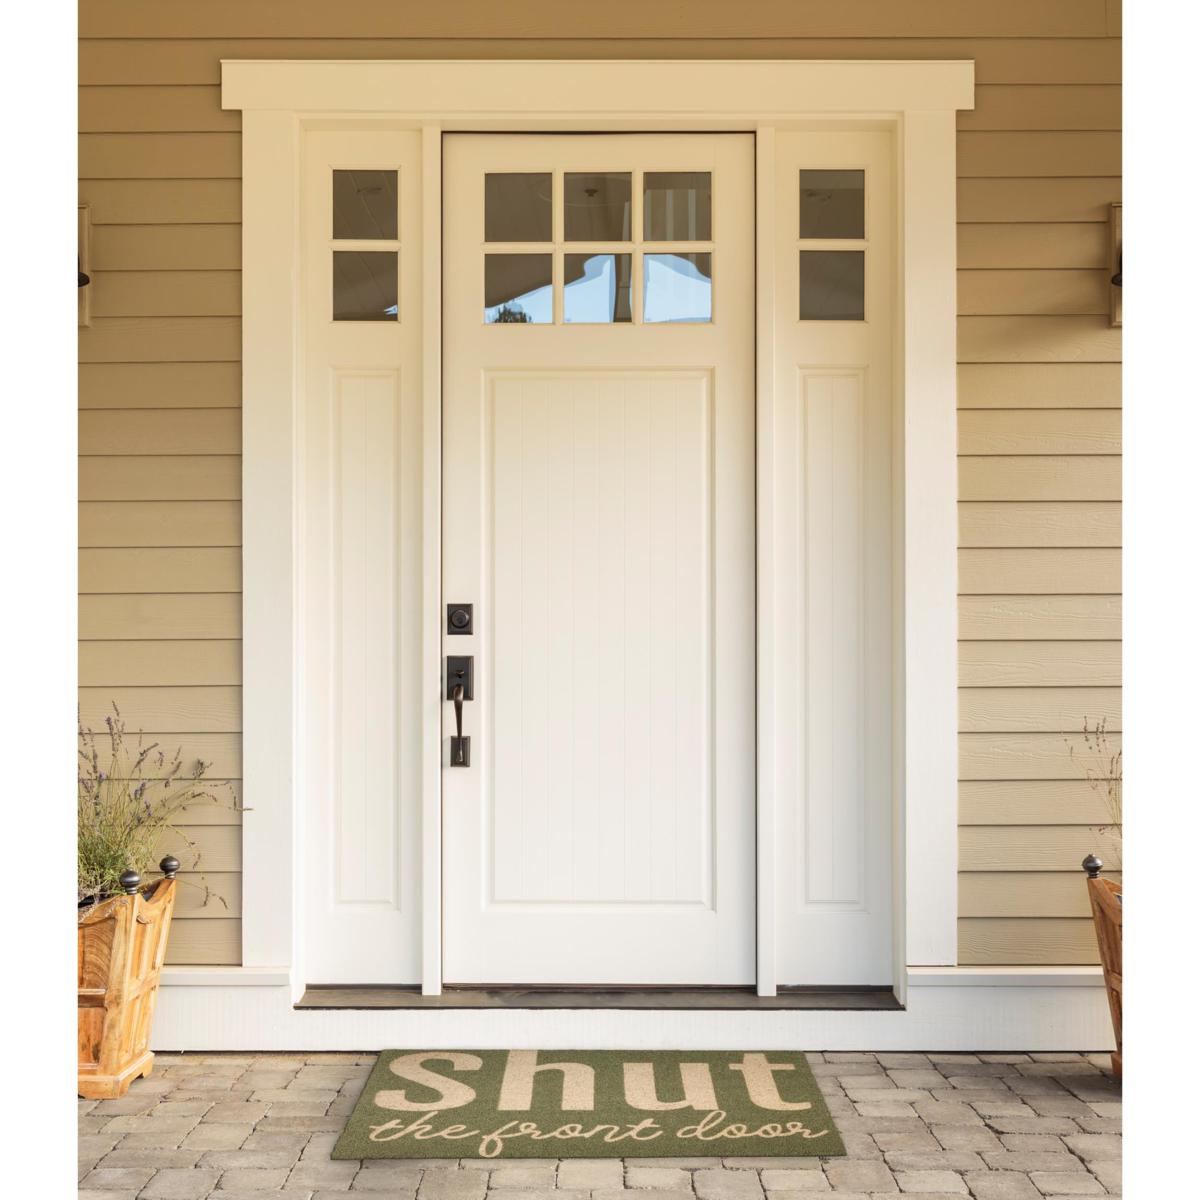 Design Imports Shut The Front Door Doormat - 20261942